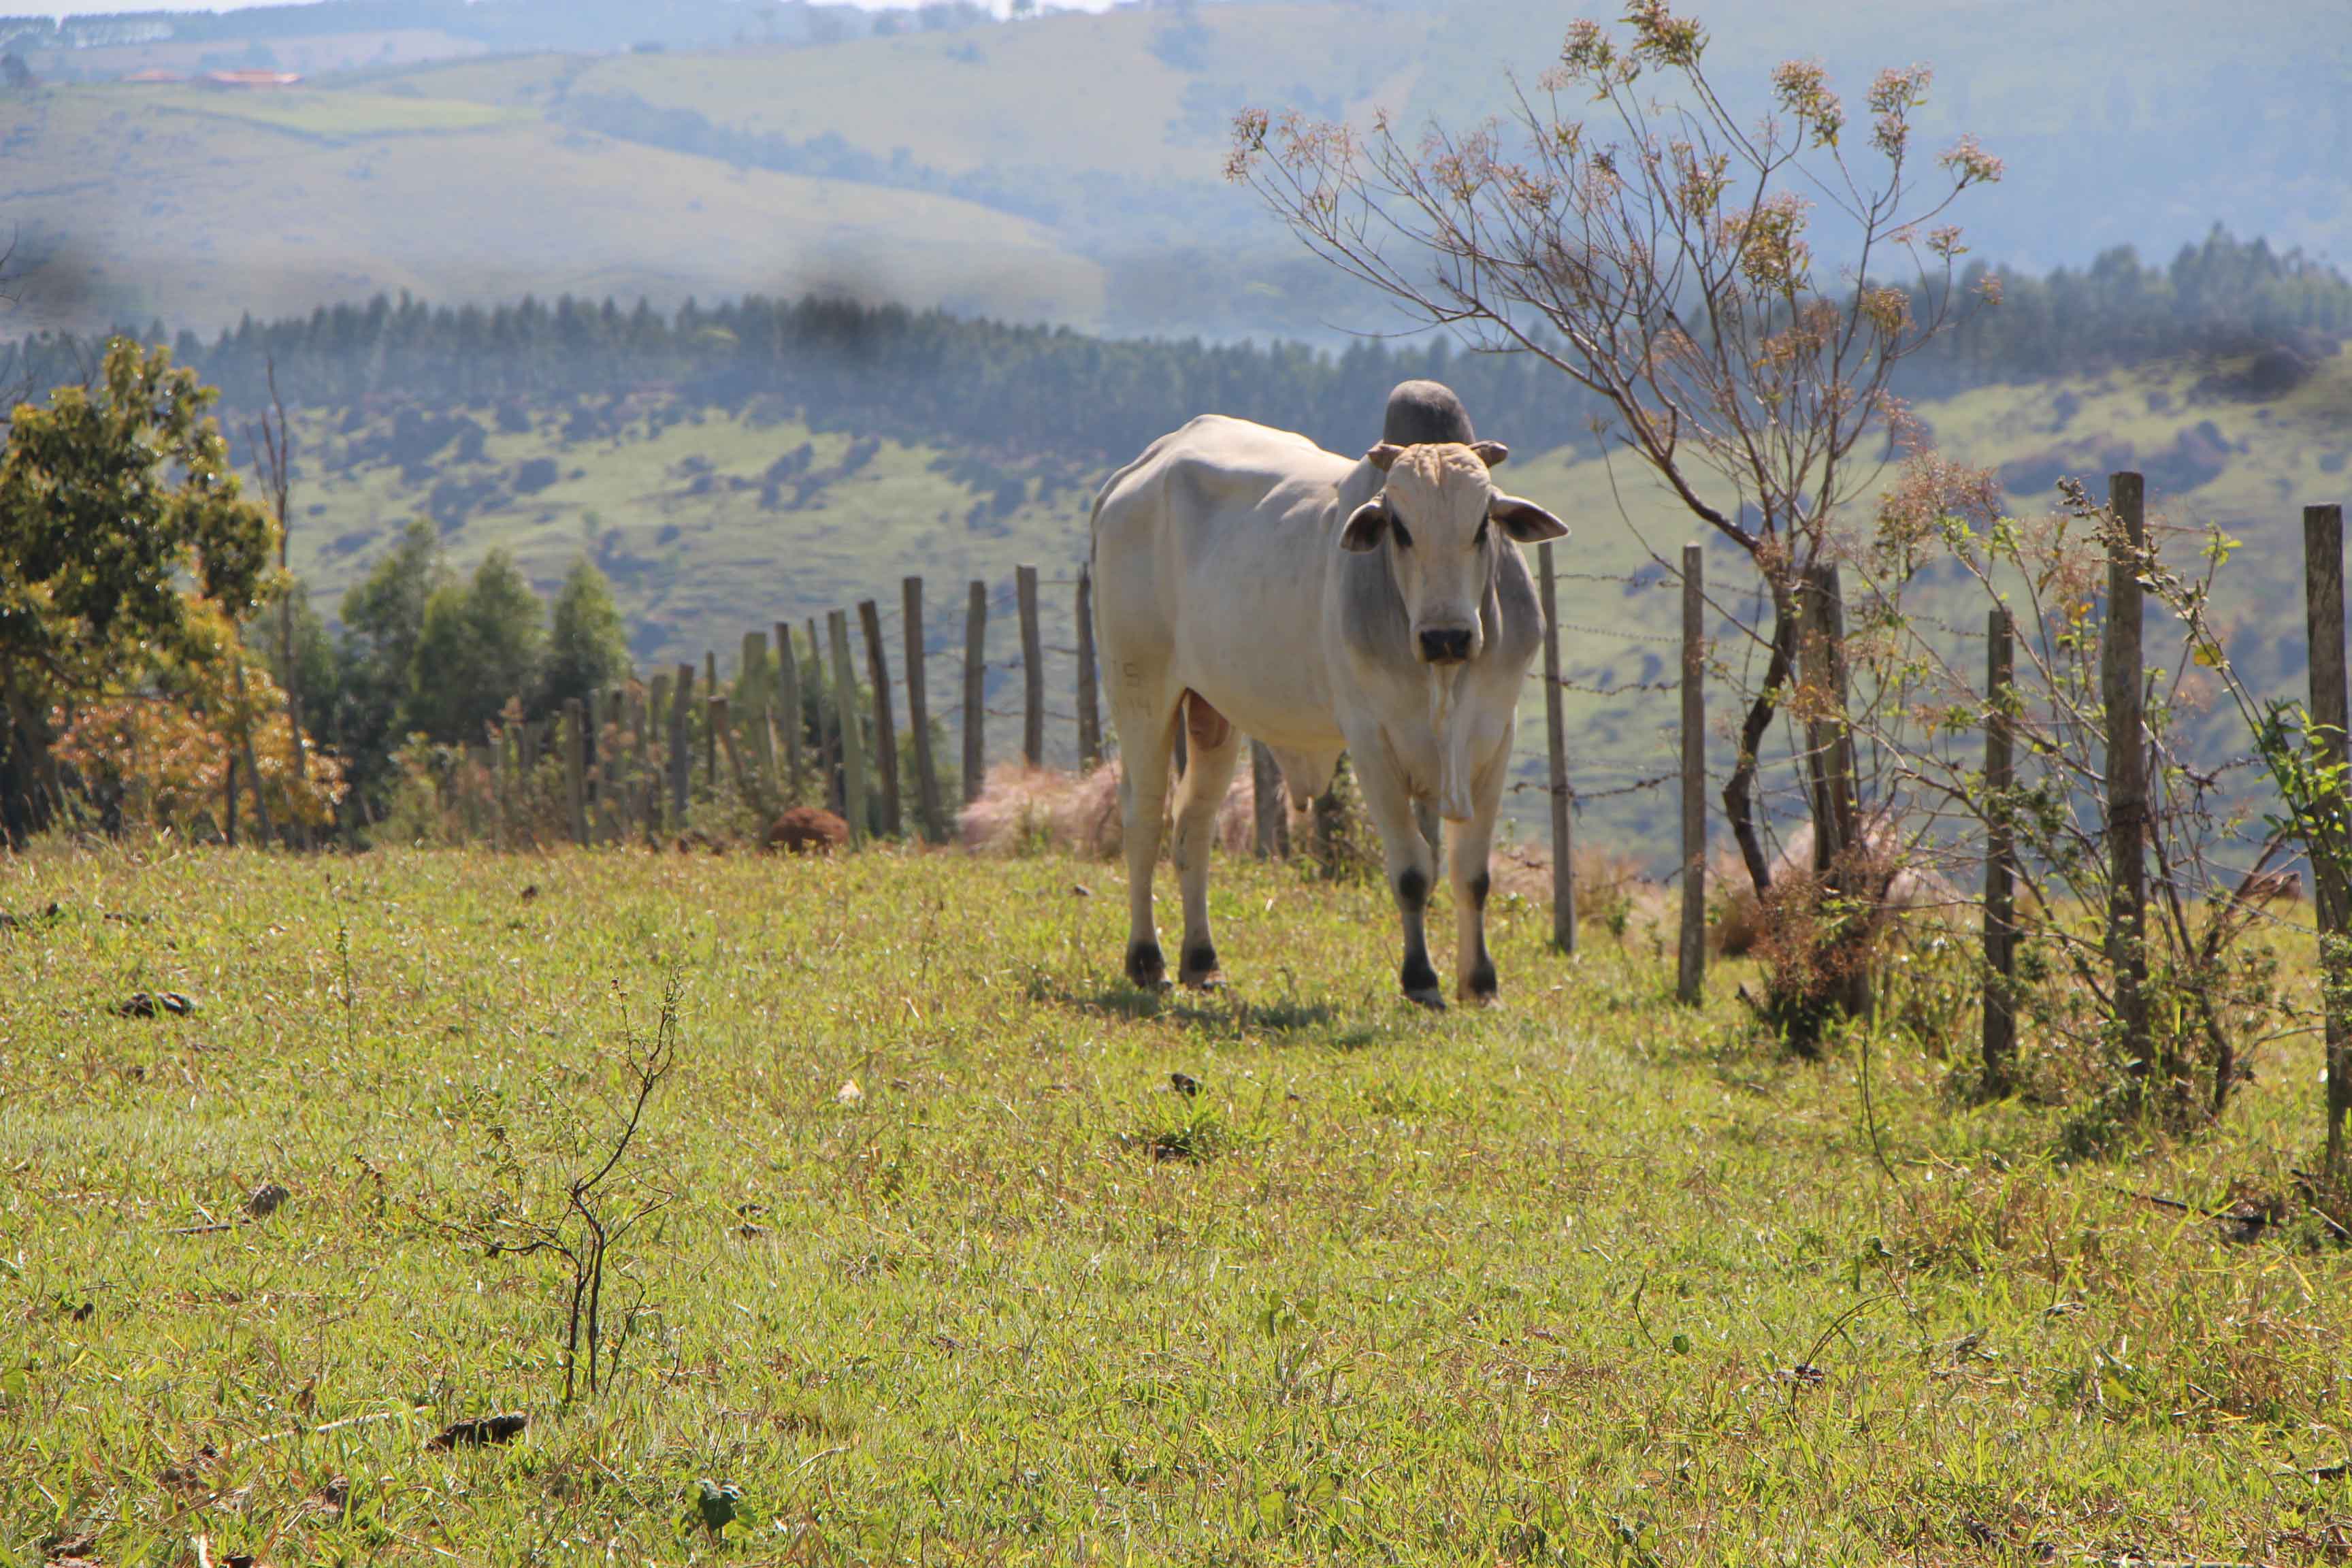 O Brasil tem mais cabeças de gado que gente, em 2017. Temos #MotivosParaDialogar